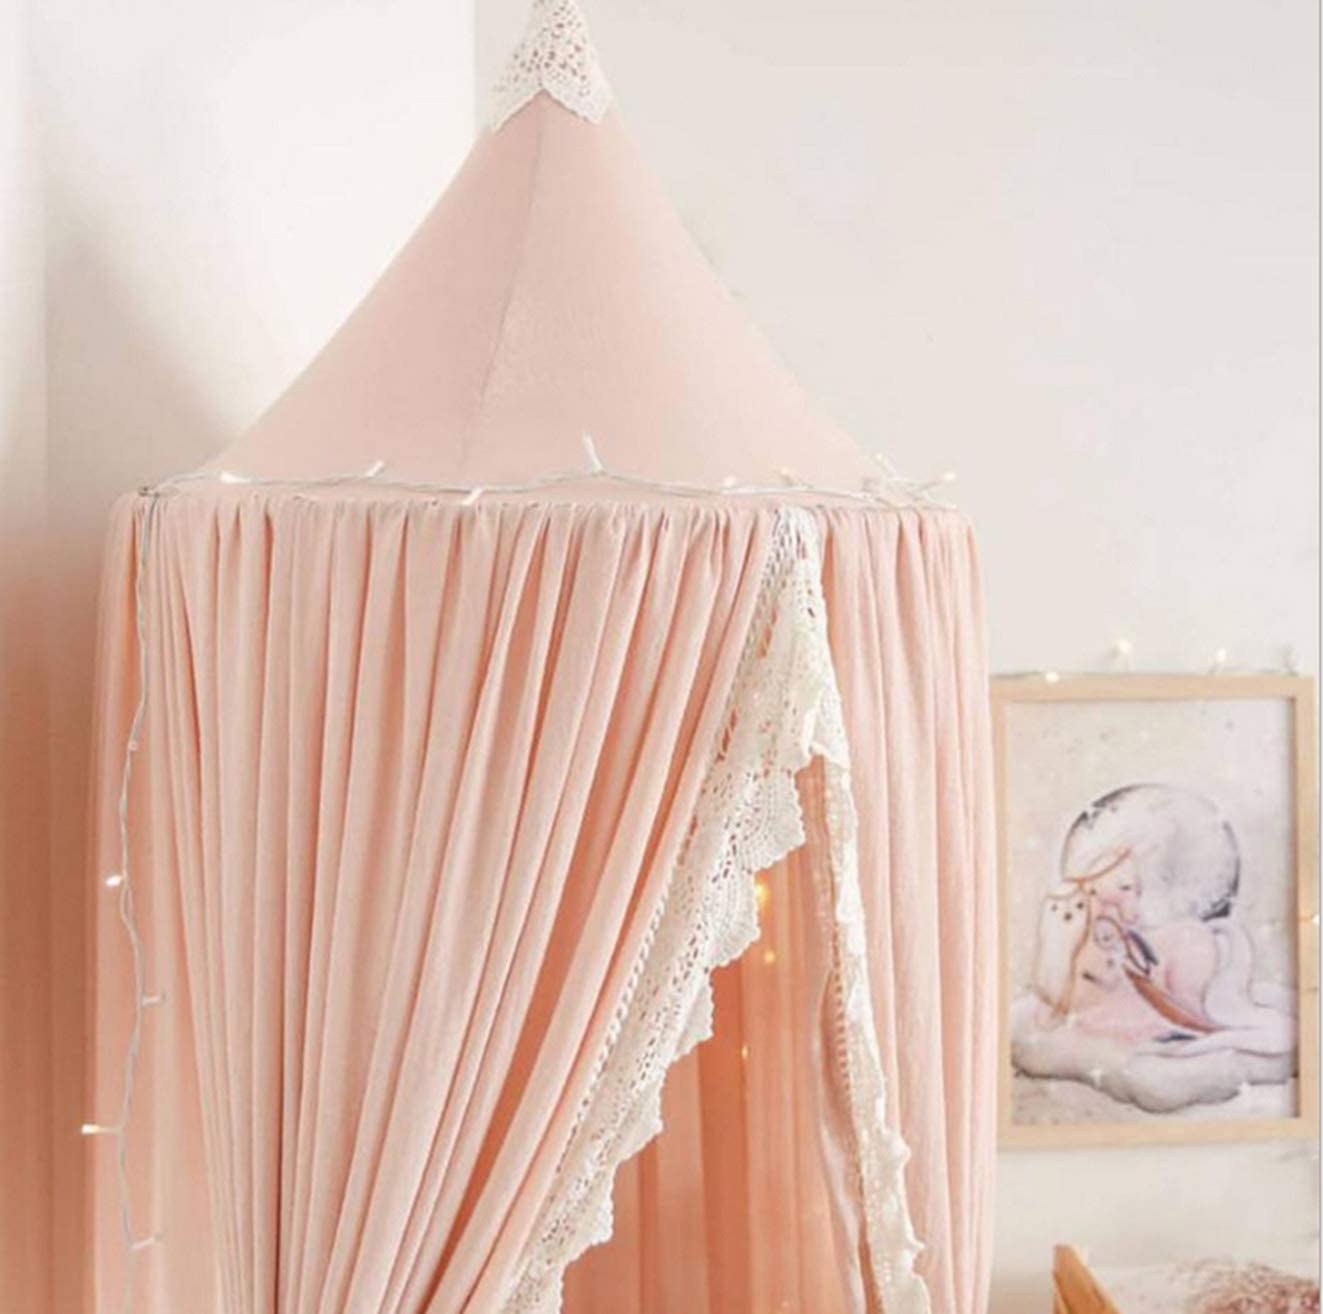 Kuppel Prinzessin Bett Baldachin Vorhang Baumwolle Zelt Kinderzimmer Dekor